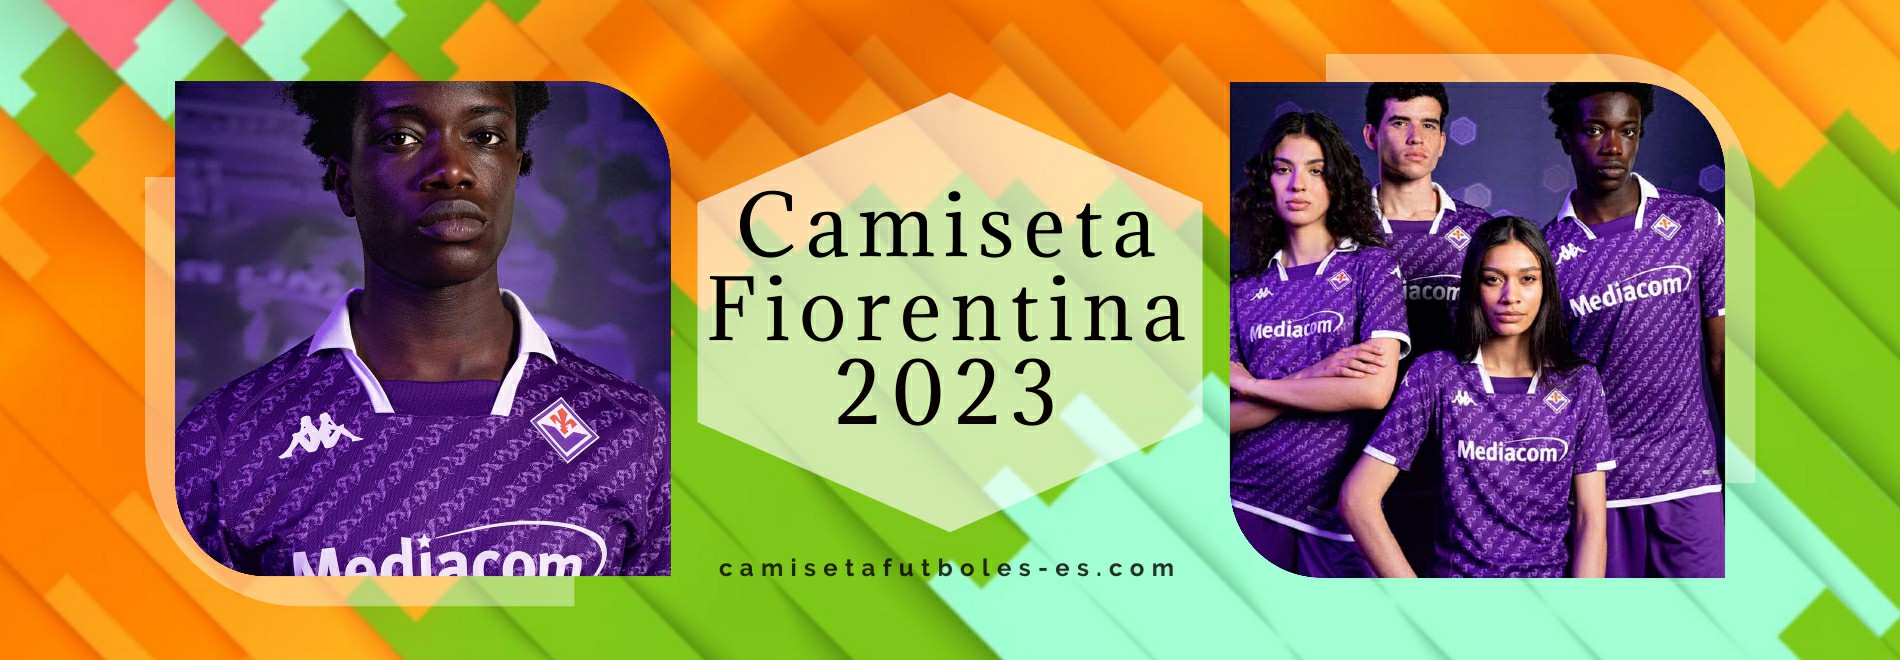 Camiseta Fiorentina 2023-2024